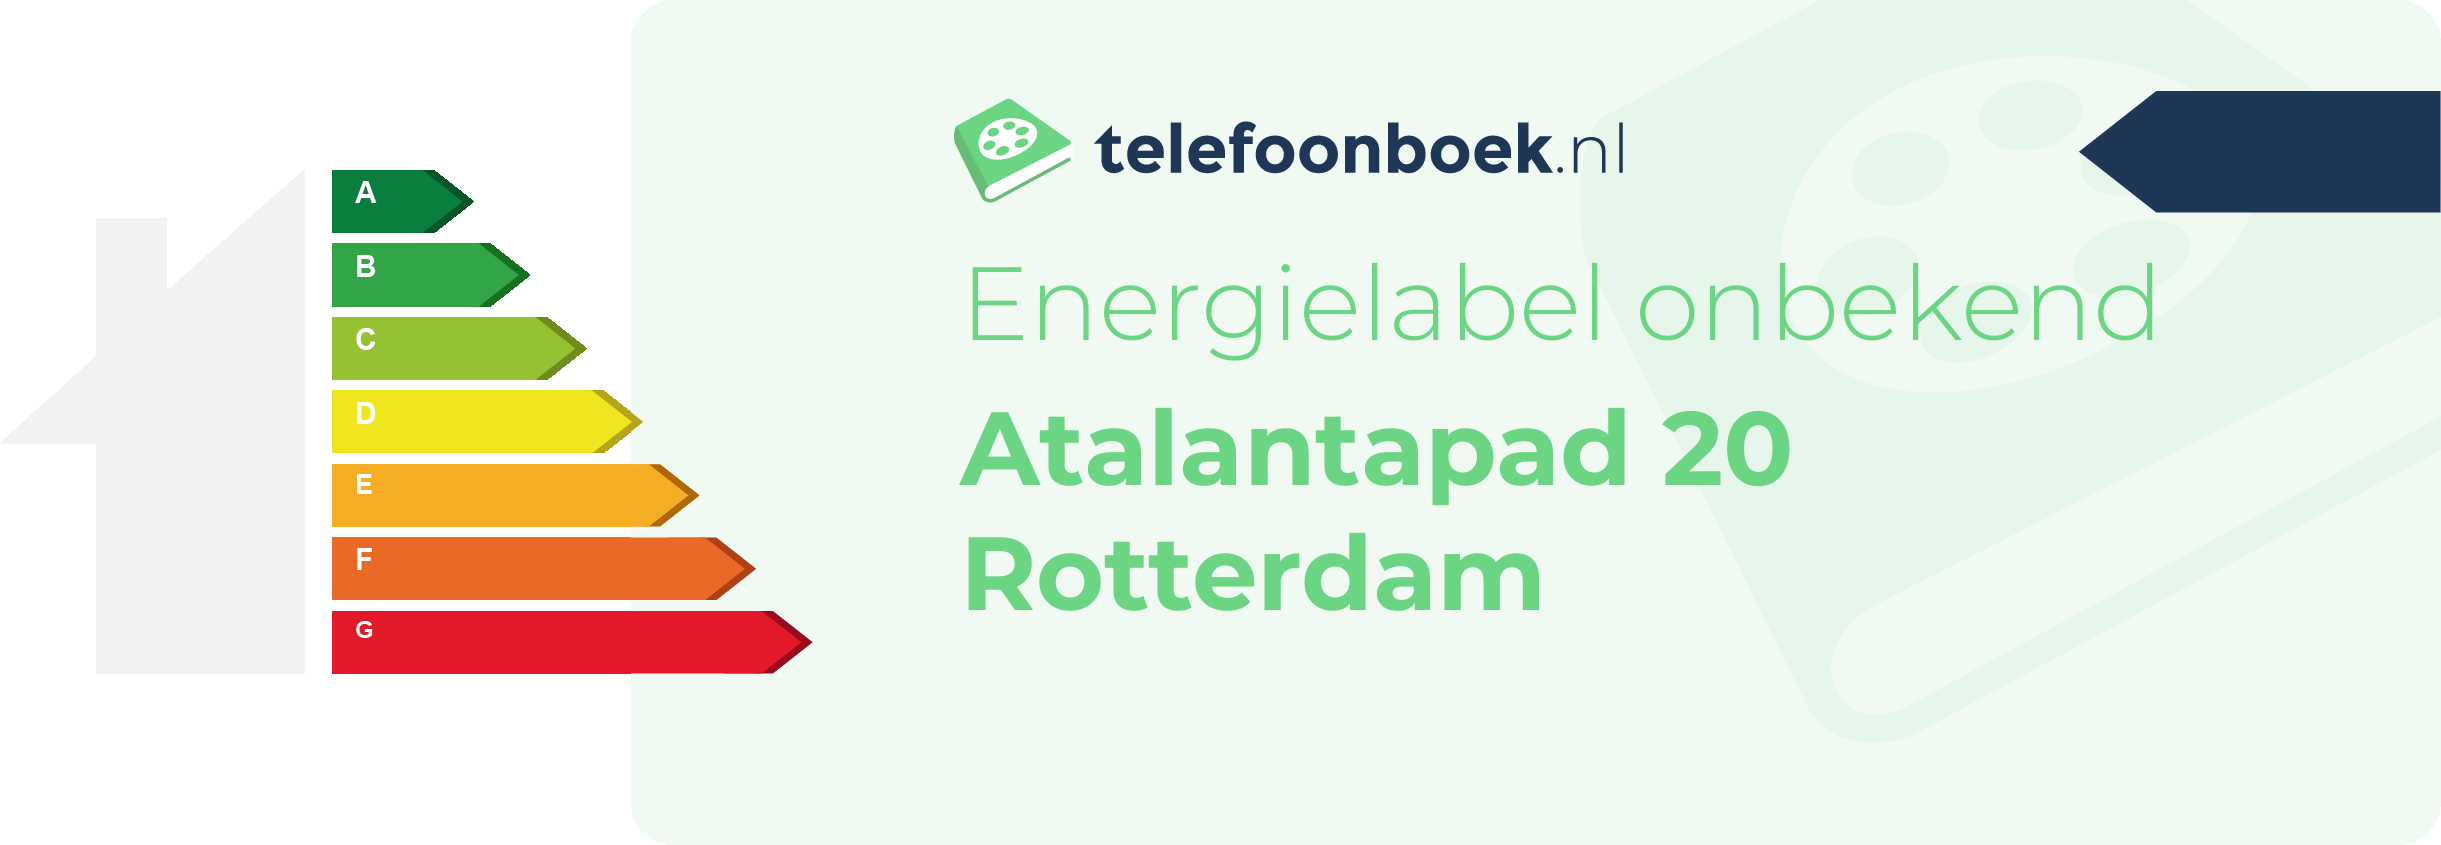 Energielabel Atalantapad 20 Rotterdam